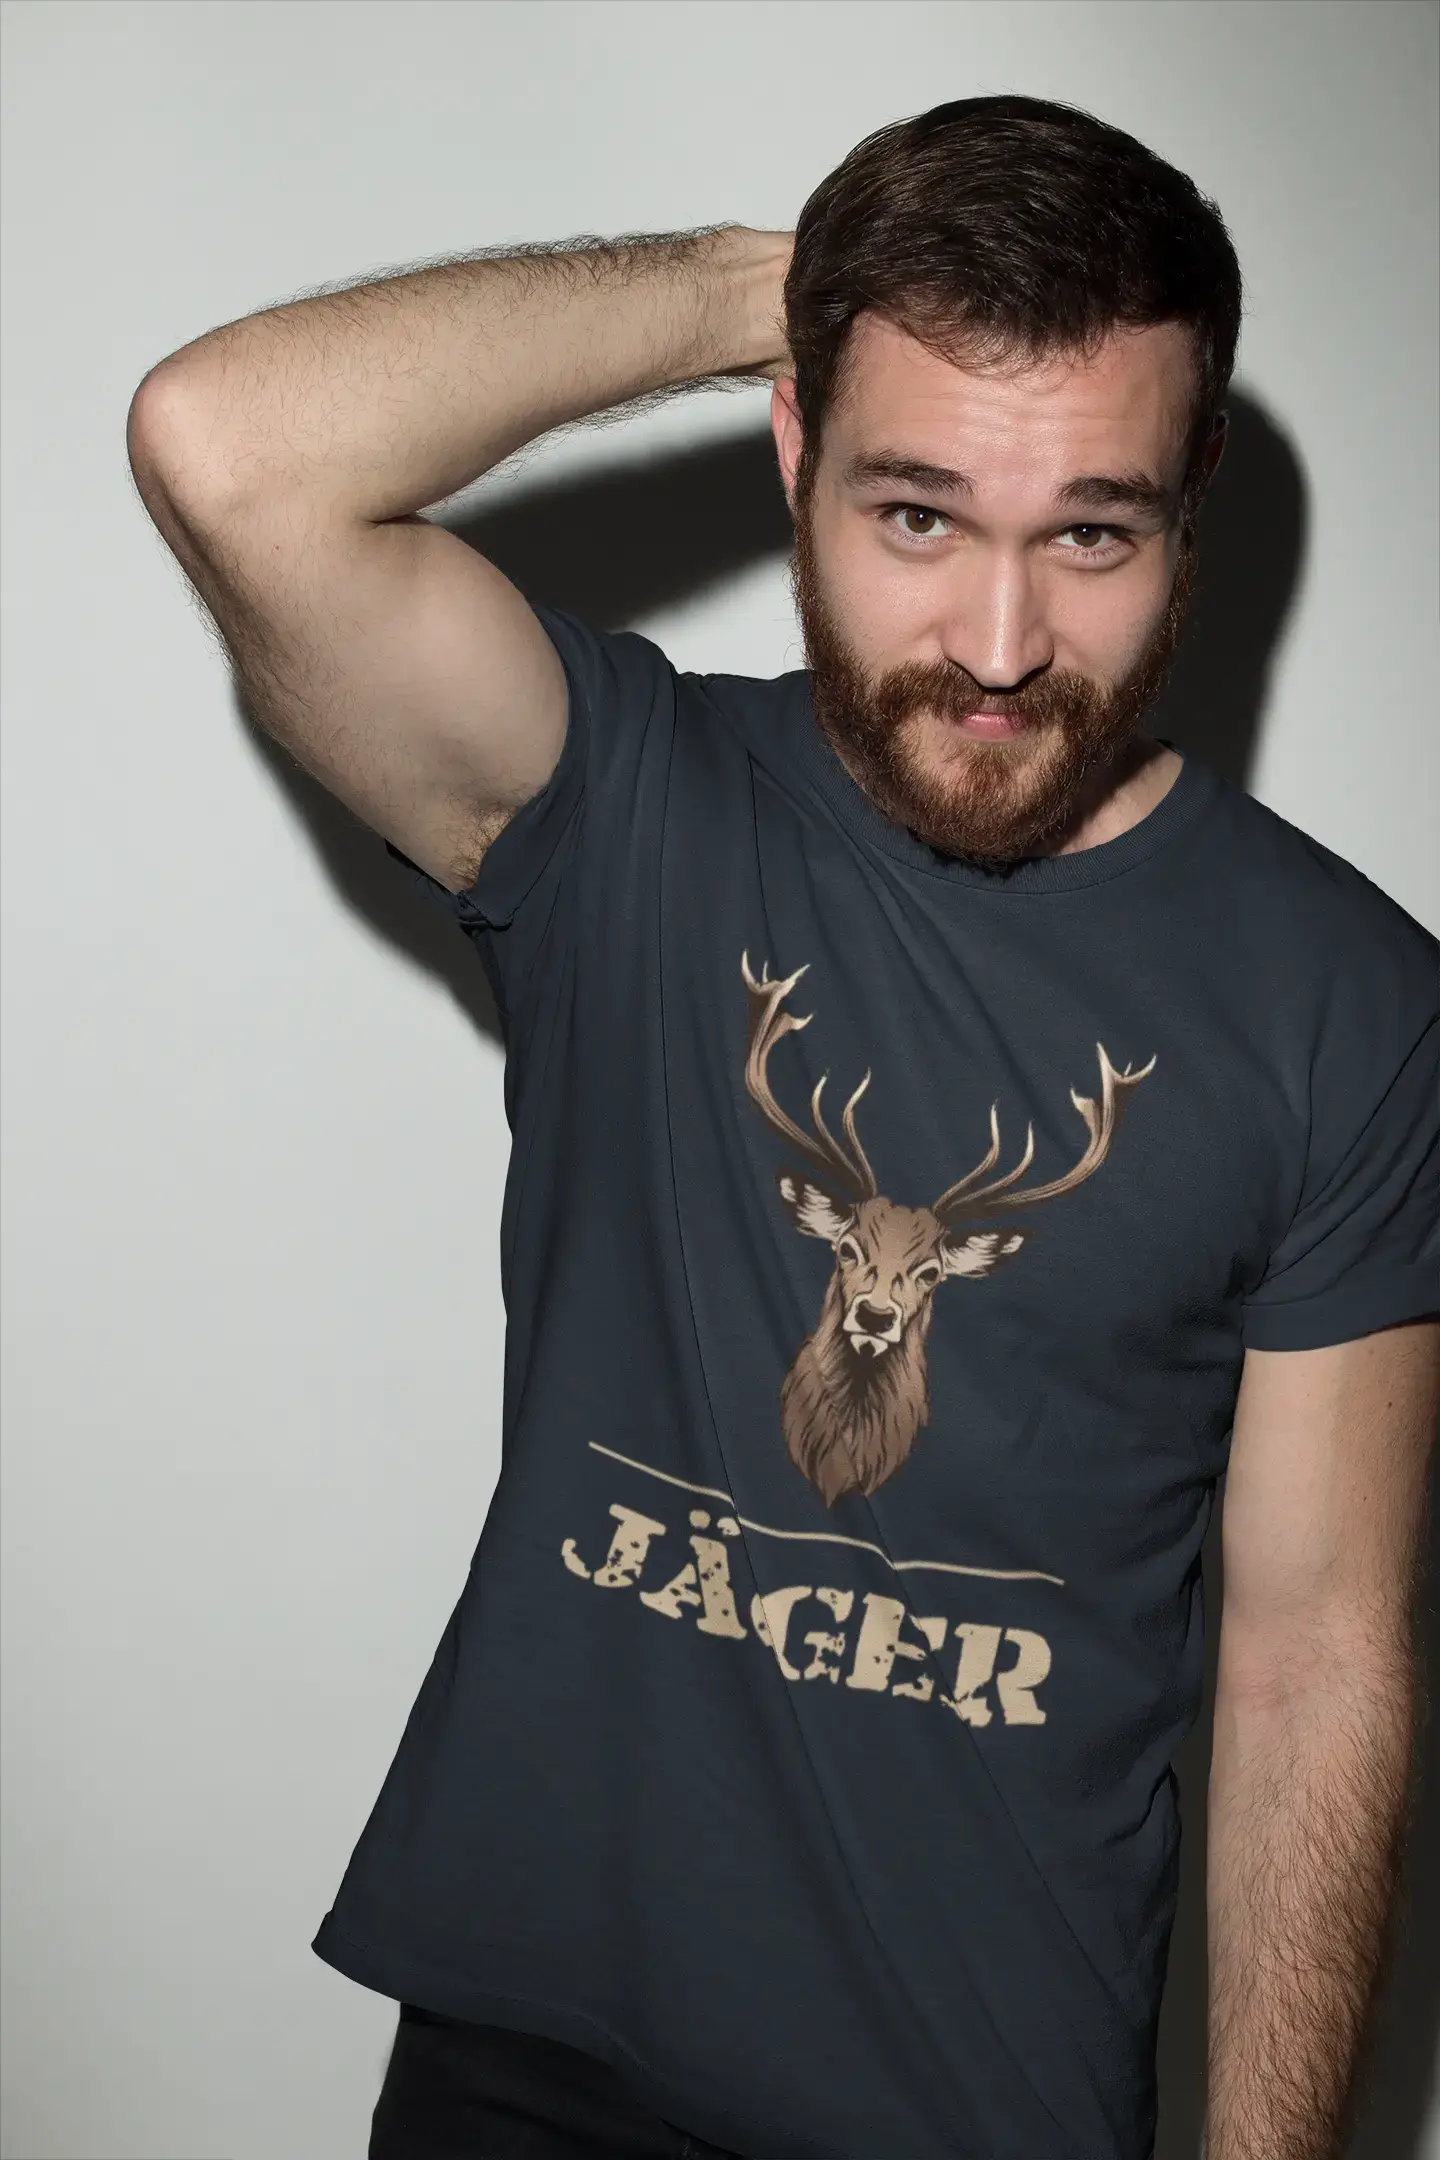 Men's Graphic T-Shirt Hirsch Jäger Idea Gift